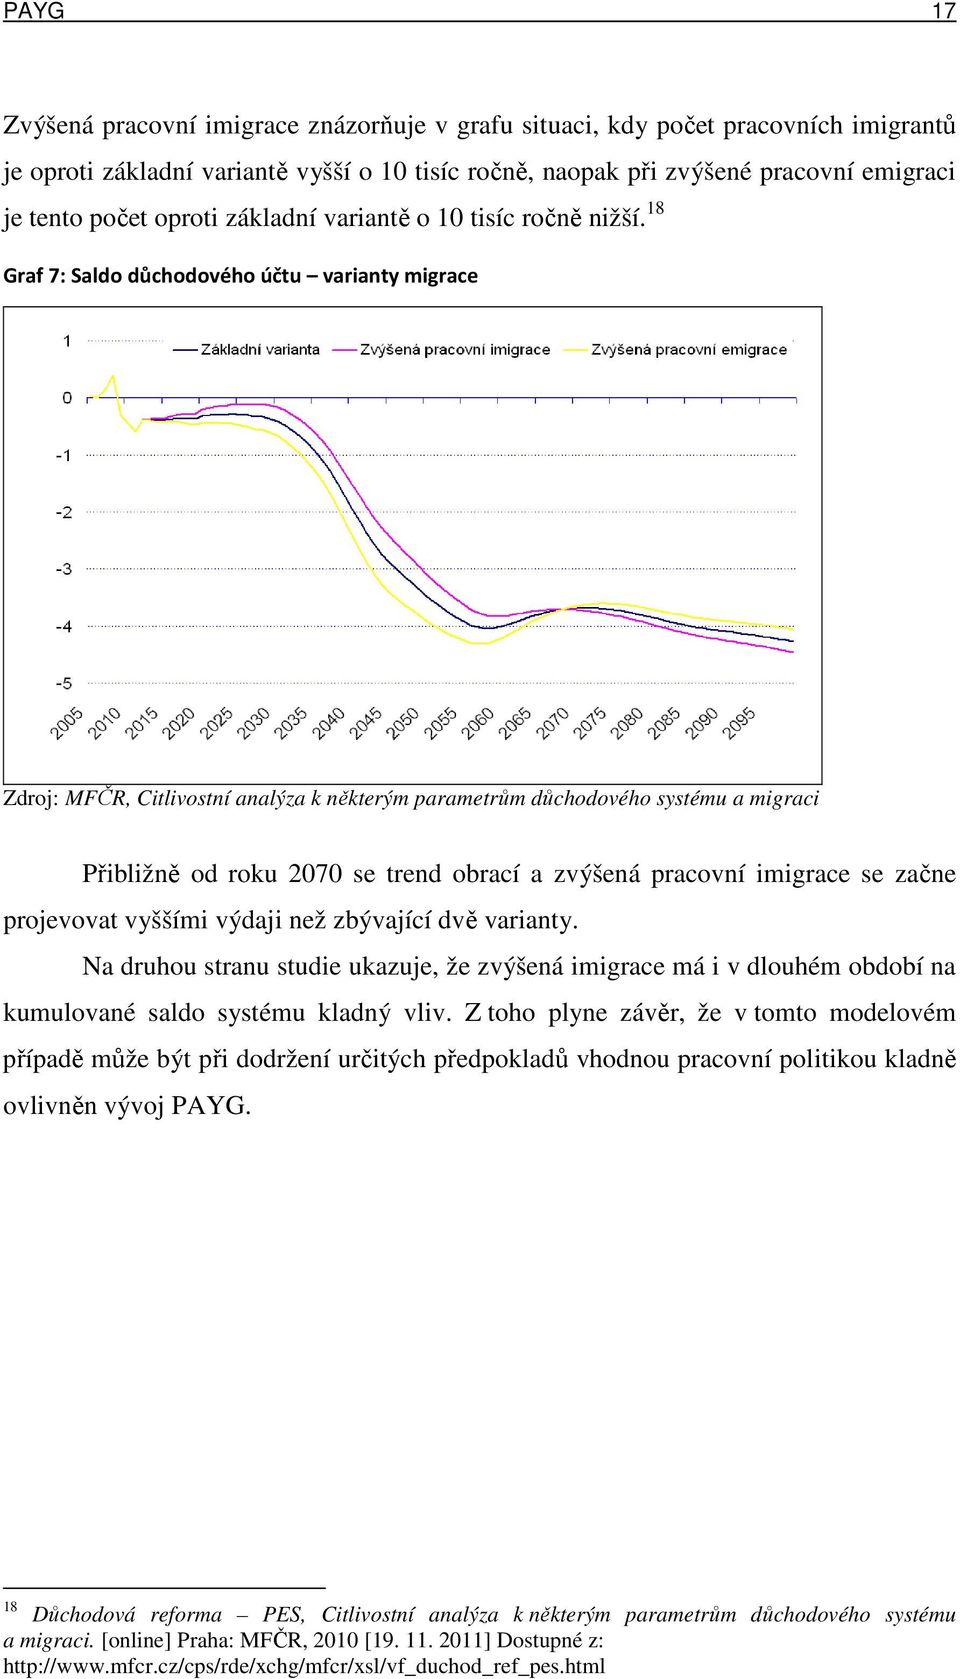 18 Graf 7: Saldo důchodového účtu varianty migrace Zdroj: MFČR, Citlivostní analýza k některým parametrům důchodového systému a migraci Přibližně od roku 2070 se trend obrací a zvýšená pracovní